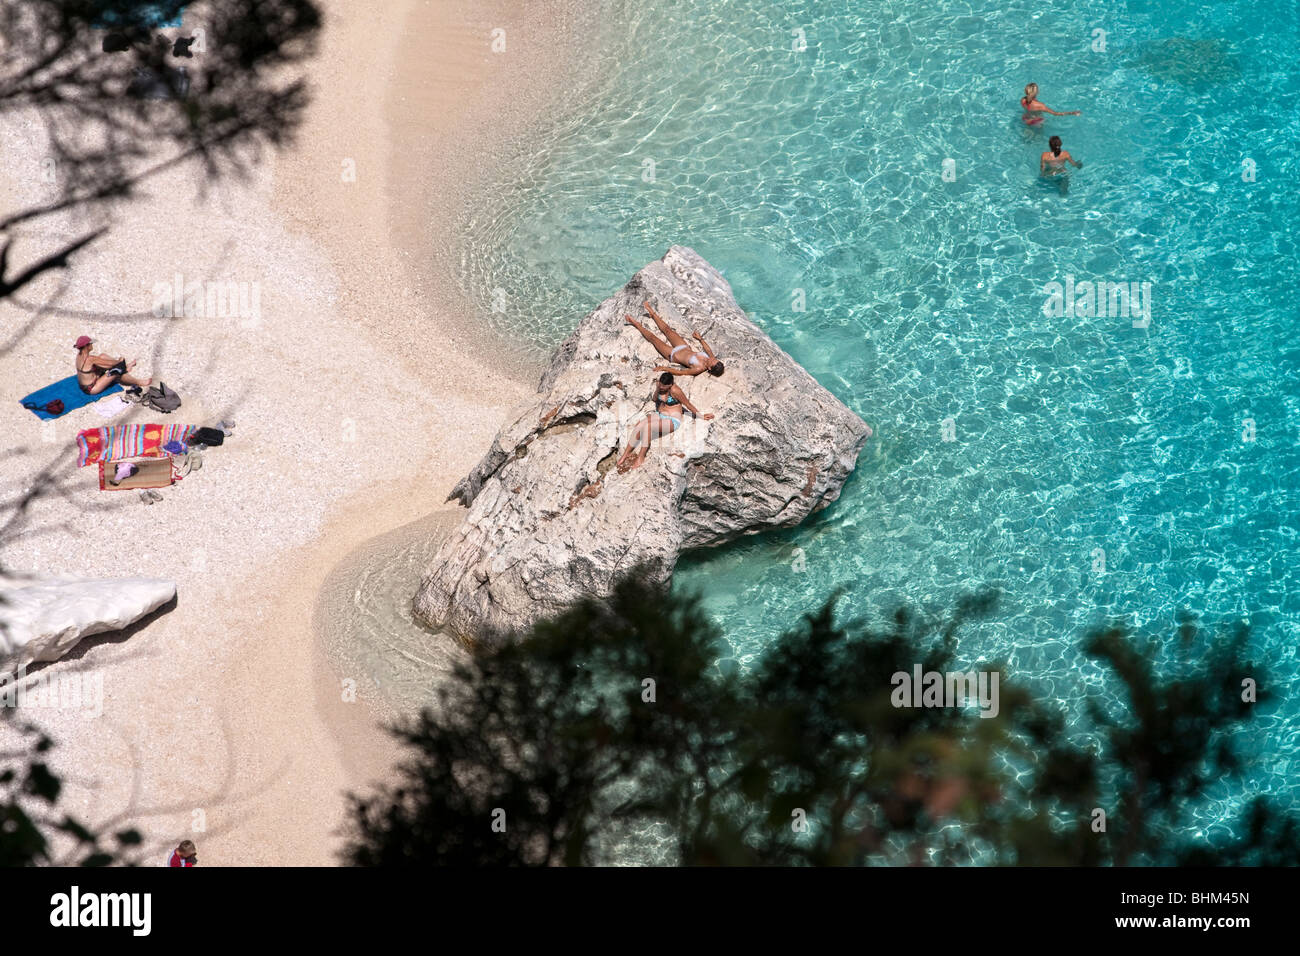 Les gens au soleil dans la plage de Cala Goloritze, Sardaigne, île de l'Italie. Eau bleu clair dans la baie de Cala Goloritzè, Mer Méditerranée Banque D'Images